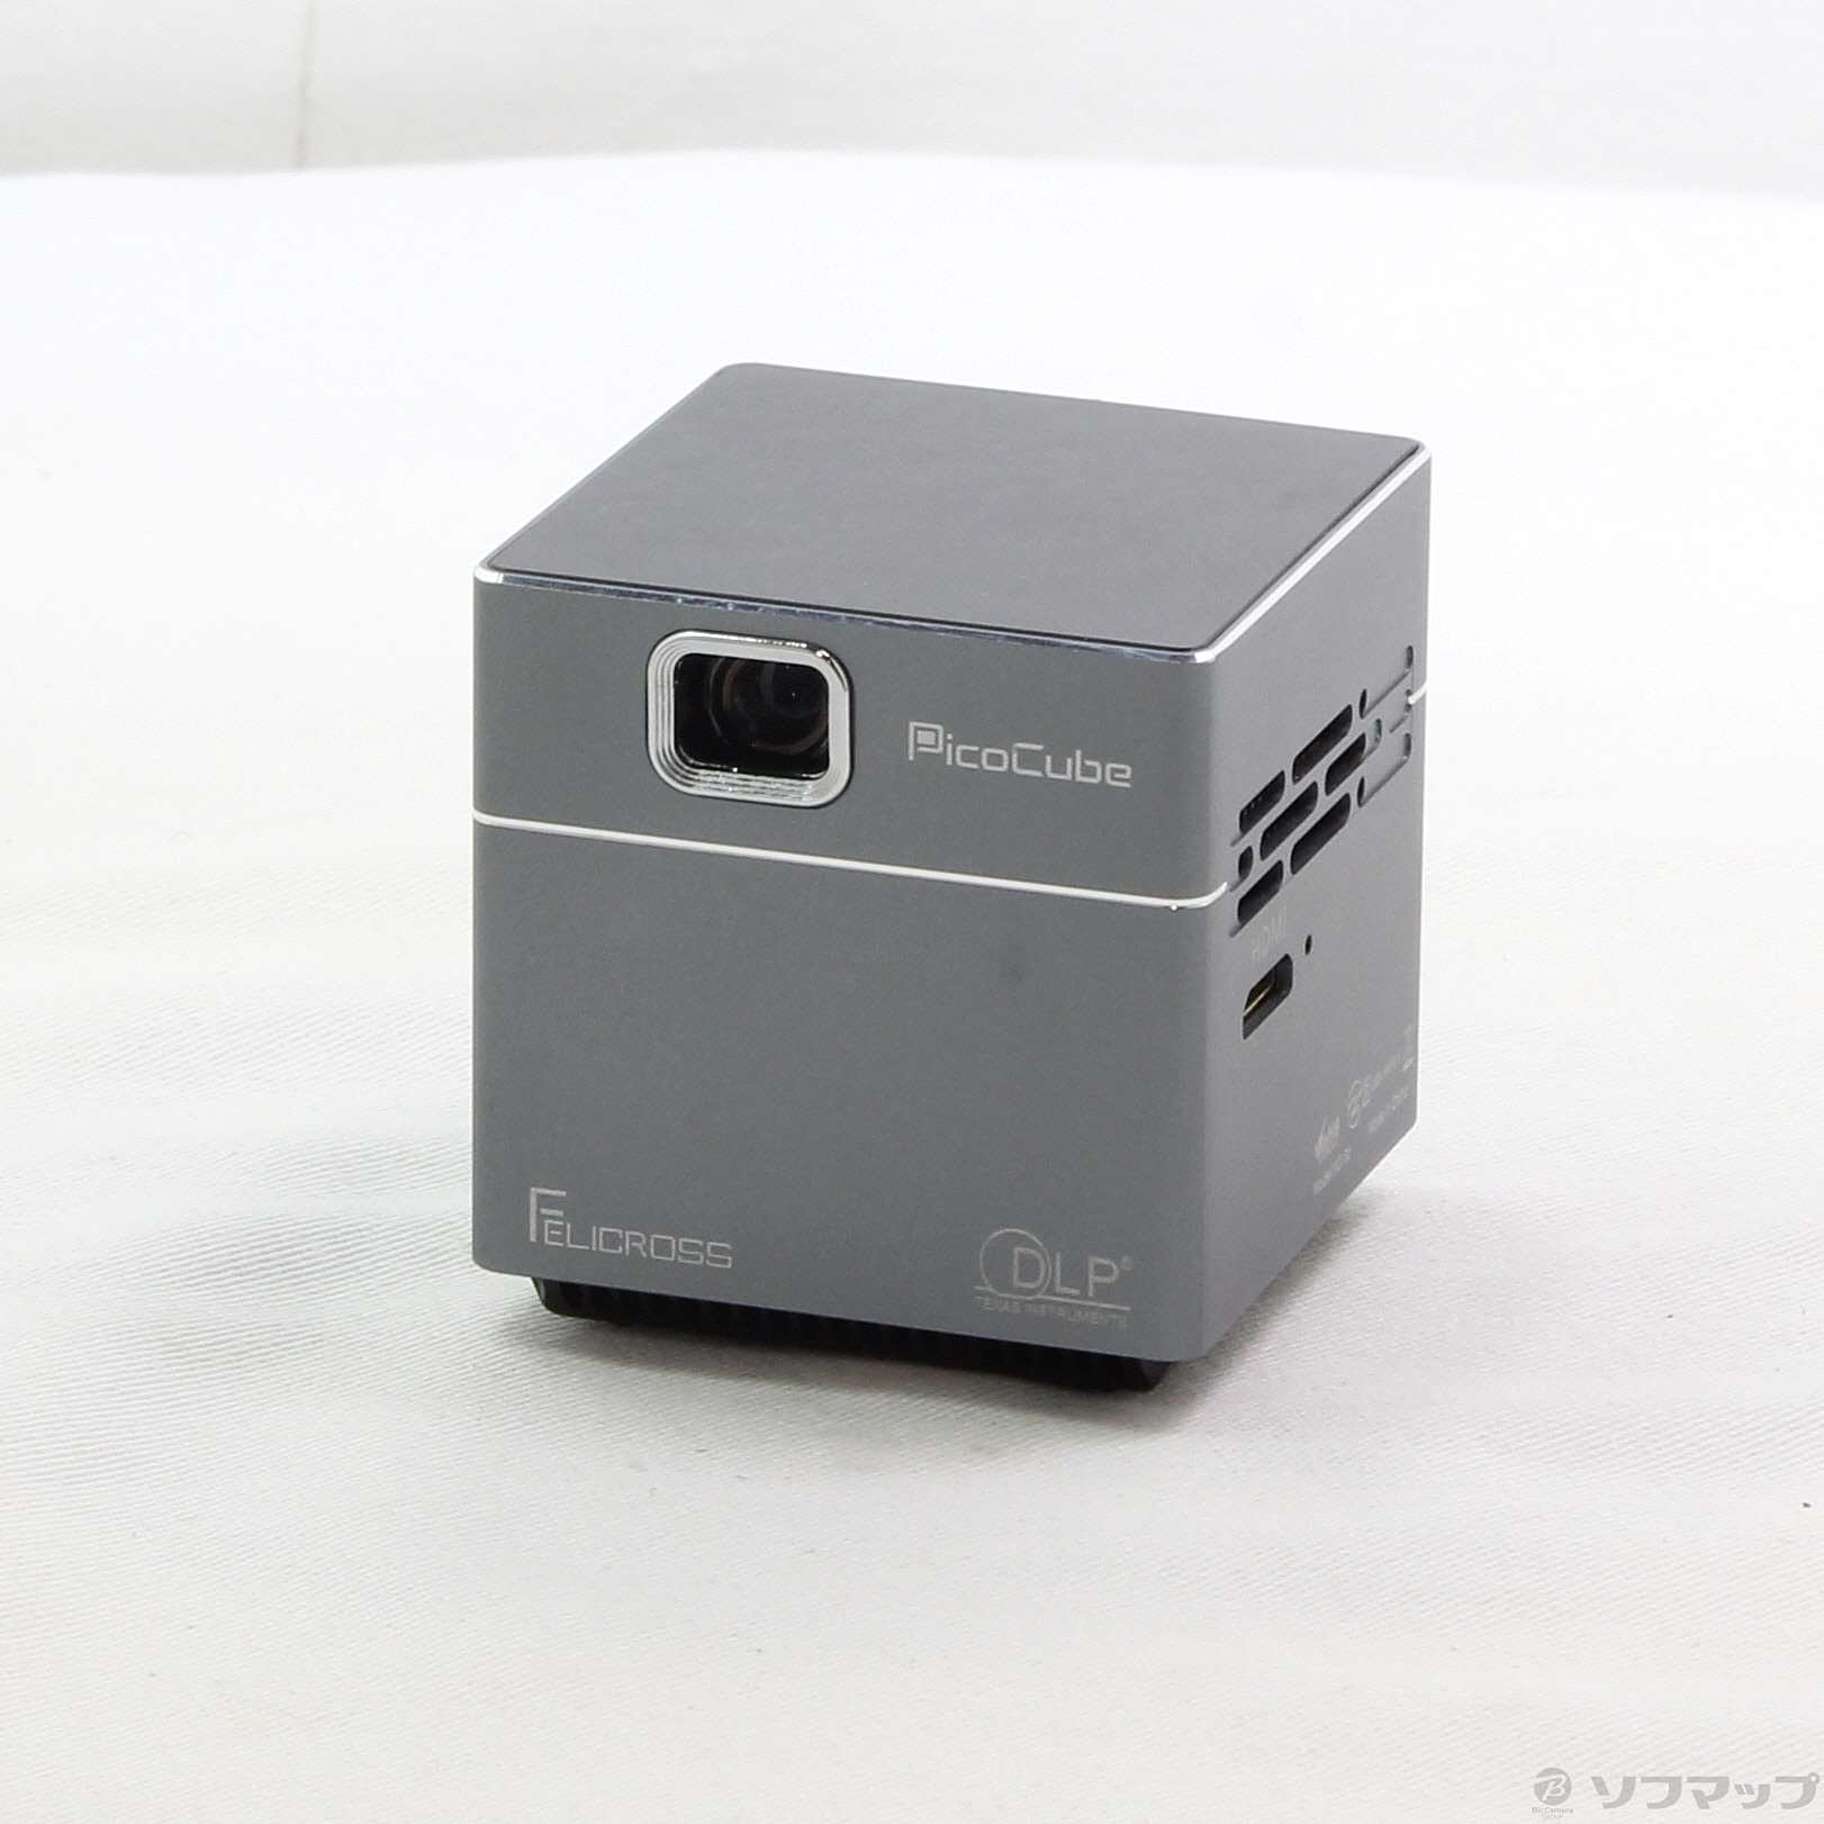 〔展示品〕 Pico Cube X FCPC-S6X モバイルプロジェクター